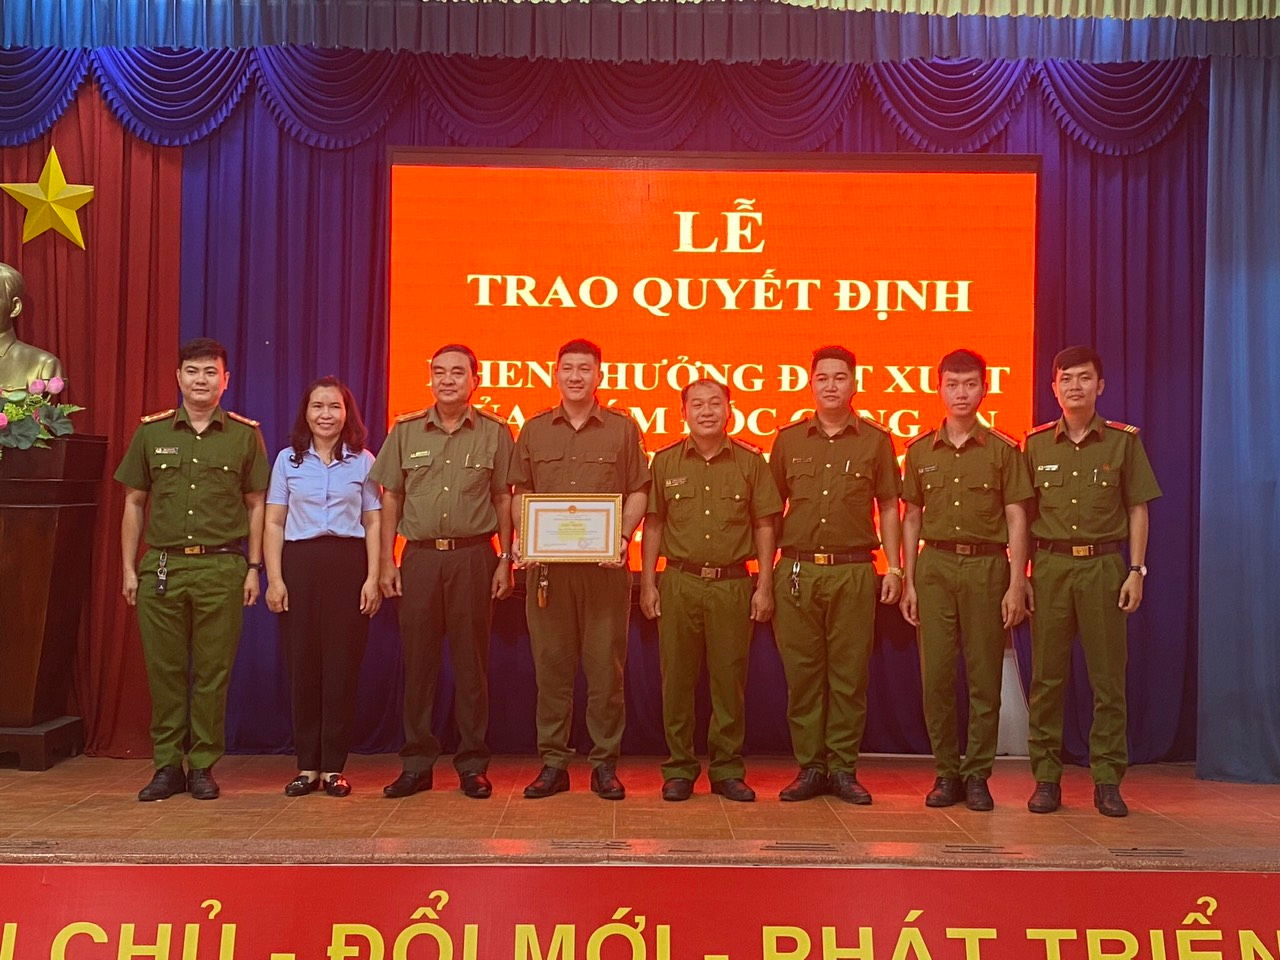 Đồng chí Trương Đức Nghĩa Công an xã Hưng Hoà được khen thưởng (thứ 4 từ trái qua).